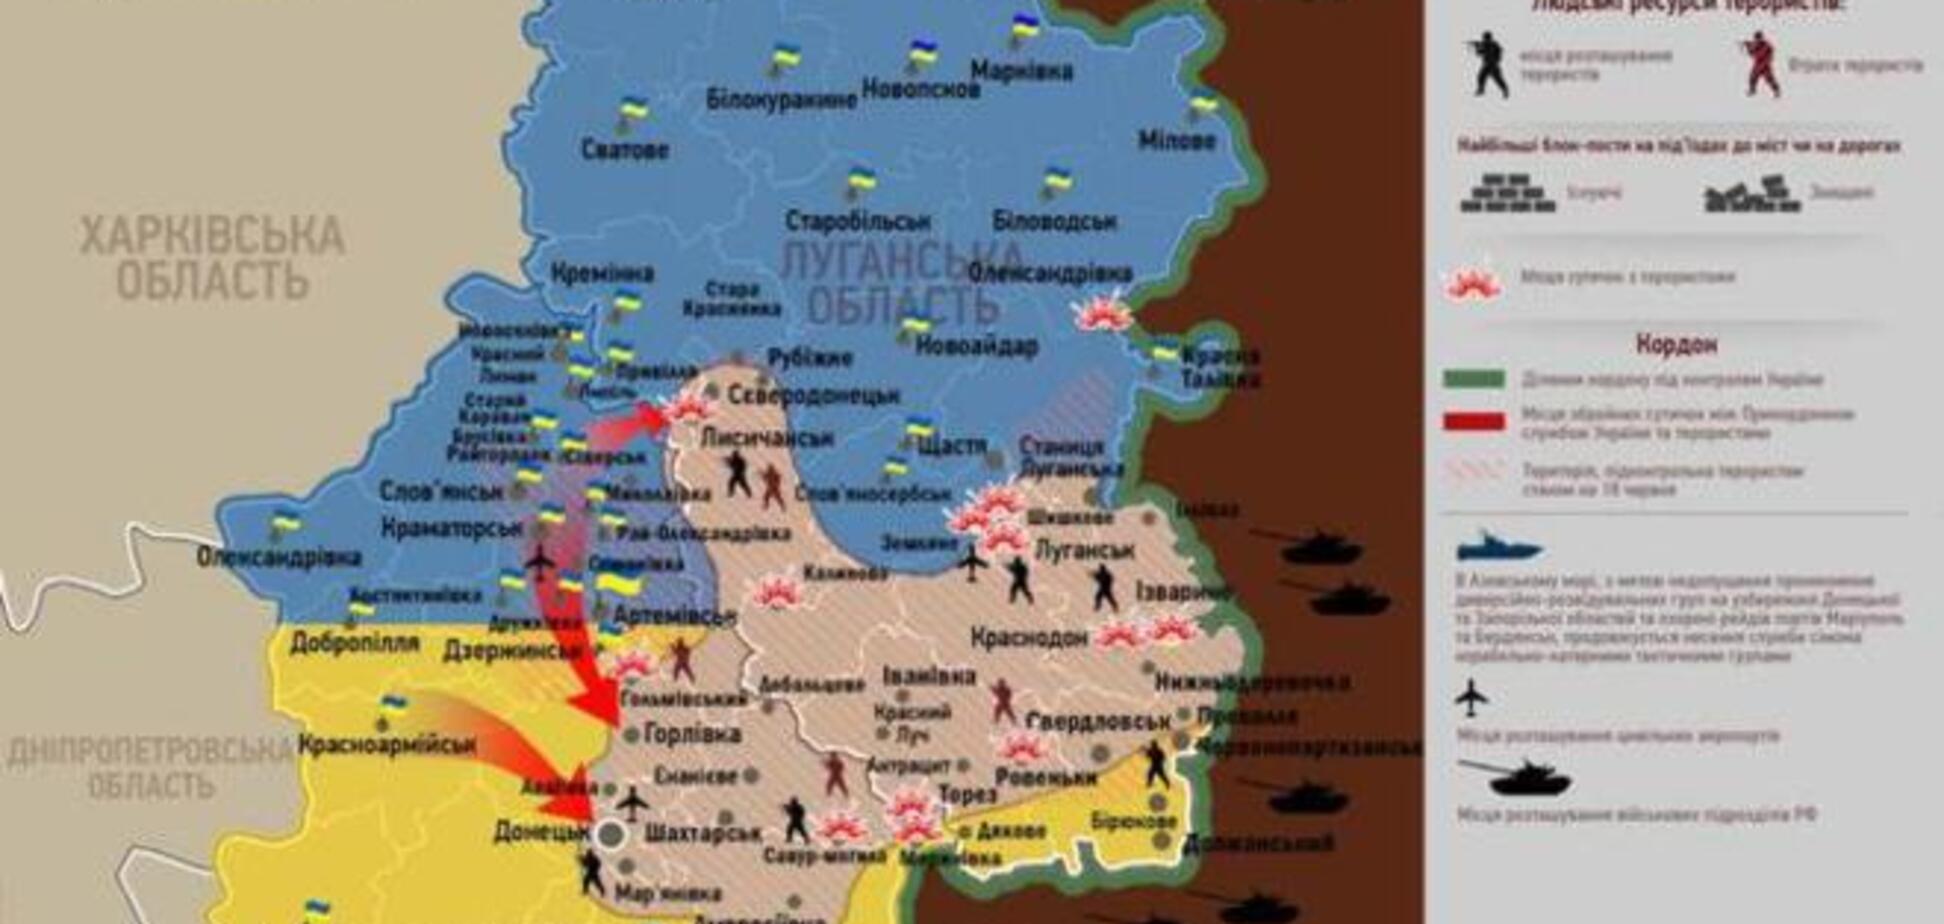 Опублікована актуальна карта боїв в зоні АТО - 14 липня 2014